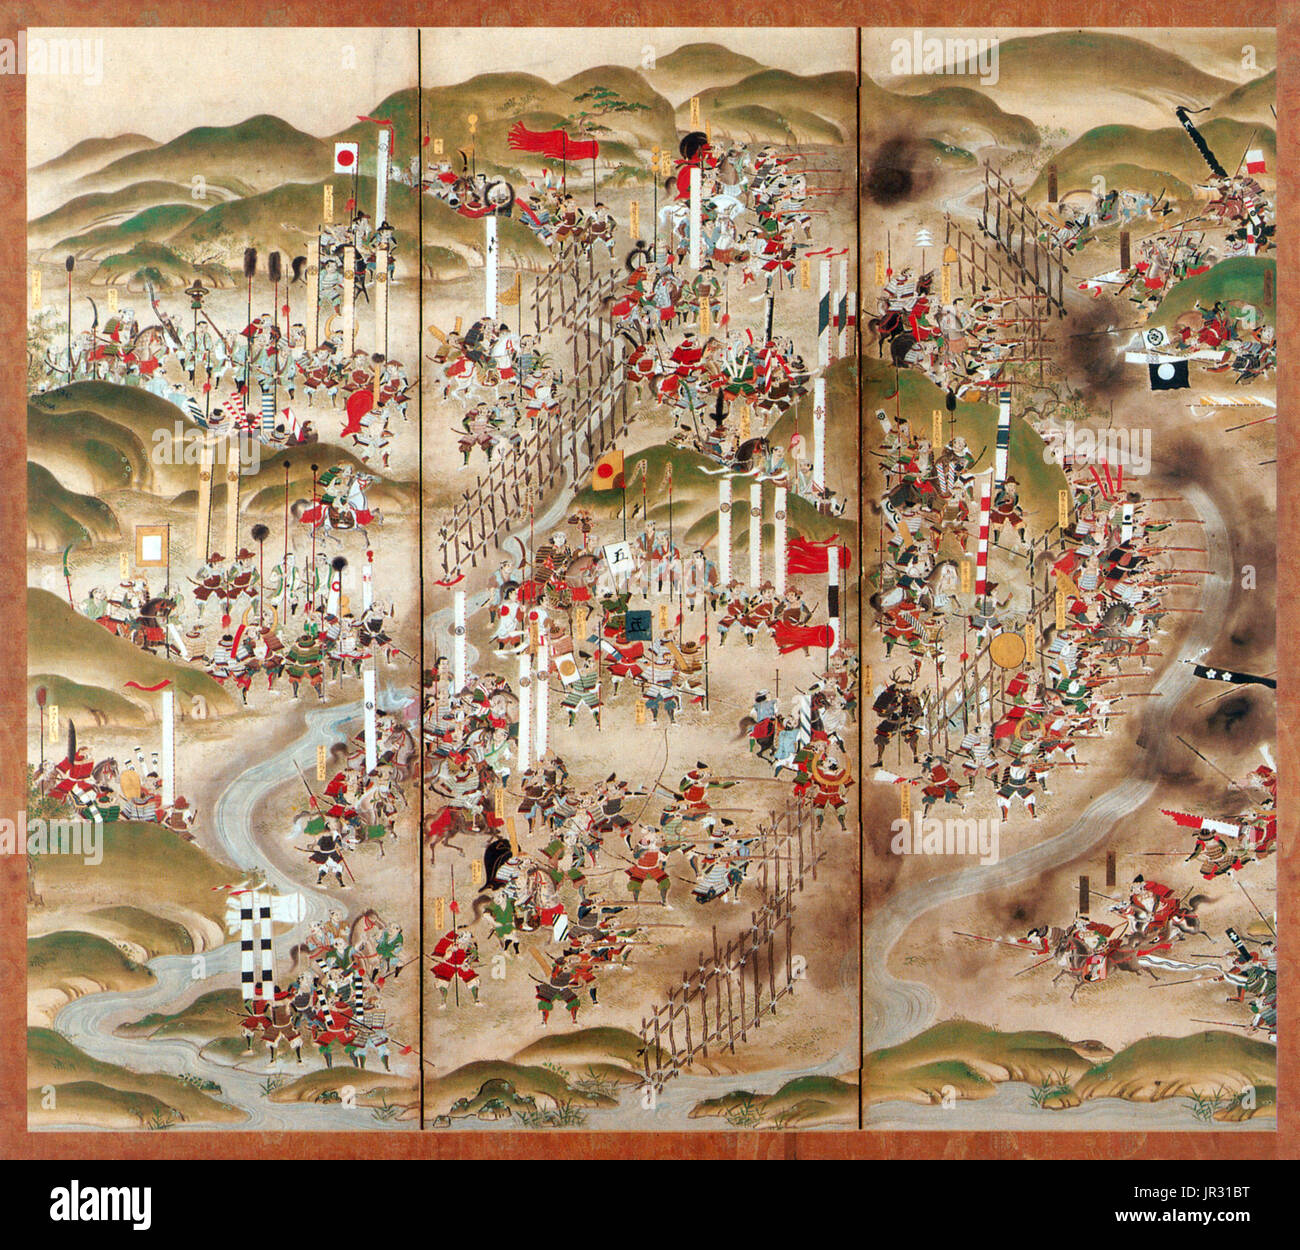 La bataille de Nagashino a eu lieu en 1575 près de Nagashino château sur la plaine d'Shitarabara dans la province de Mikawa du Japon. Katsuyori Takeda ont attaqué le château quand Sadamasa Okudaira a rejoint le shogunat Tokugawa, et lorsque son tracé original avec Oga Yashiro pour prendre Château Okazaki, la capitale de Mikawa, a été découvert. Katsuyori ont attaqué le château le 16 juin, à l'aide de mineurs d'or de Takeda sous les murs du tunnel, des radeaux de samouraï ferry à travers le cours d'eau, et les tours de siège. Le 22 juin, le siège est devenu un blocus complet avec des palissades et des câbles éparpillés à travers la rivière. Les défenseurs puis définir Torii Banque D'Images